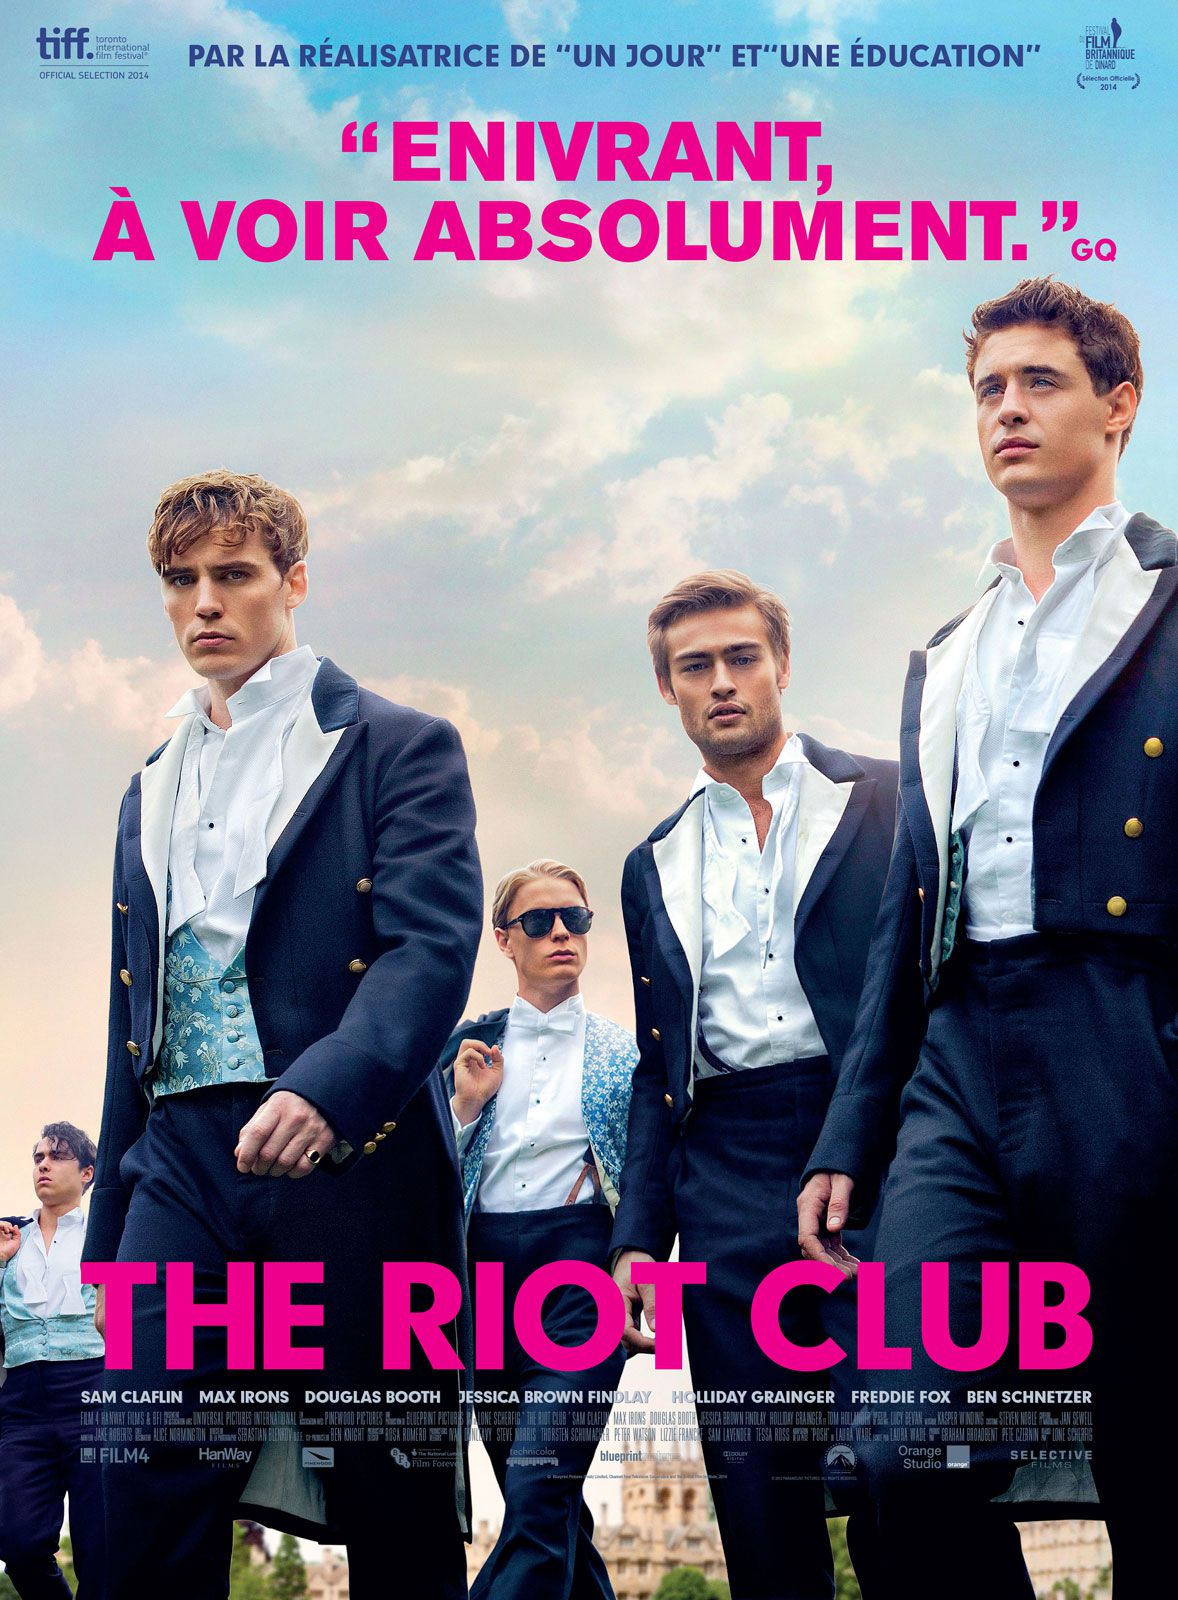 ดูหนังออนไลน์ฟรี The Riot Club (2014) เดอะ ไรออท คลับ ชมรมสุภาพบุรุษสุดเฮ้ว หนังเต็มเรื่อง หนังมาสเตอร์ ดูหนังHD ดูหนังออนไลน์ ดูหนังใหม่